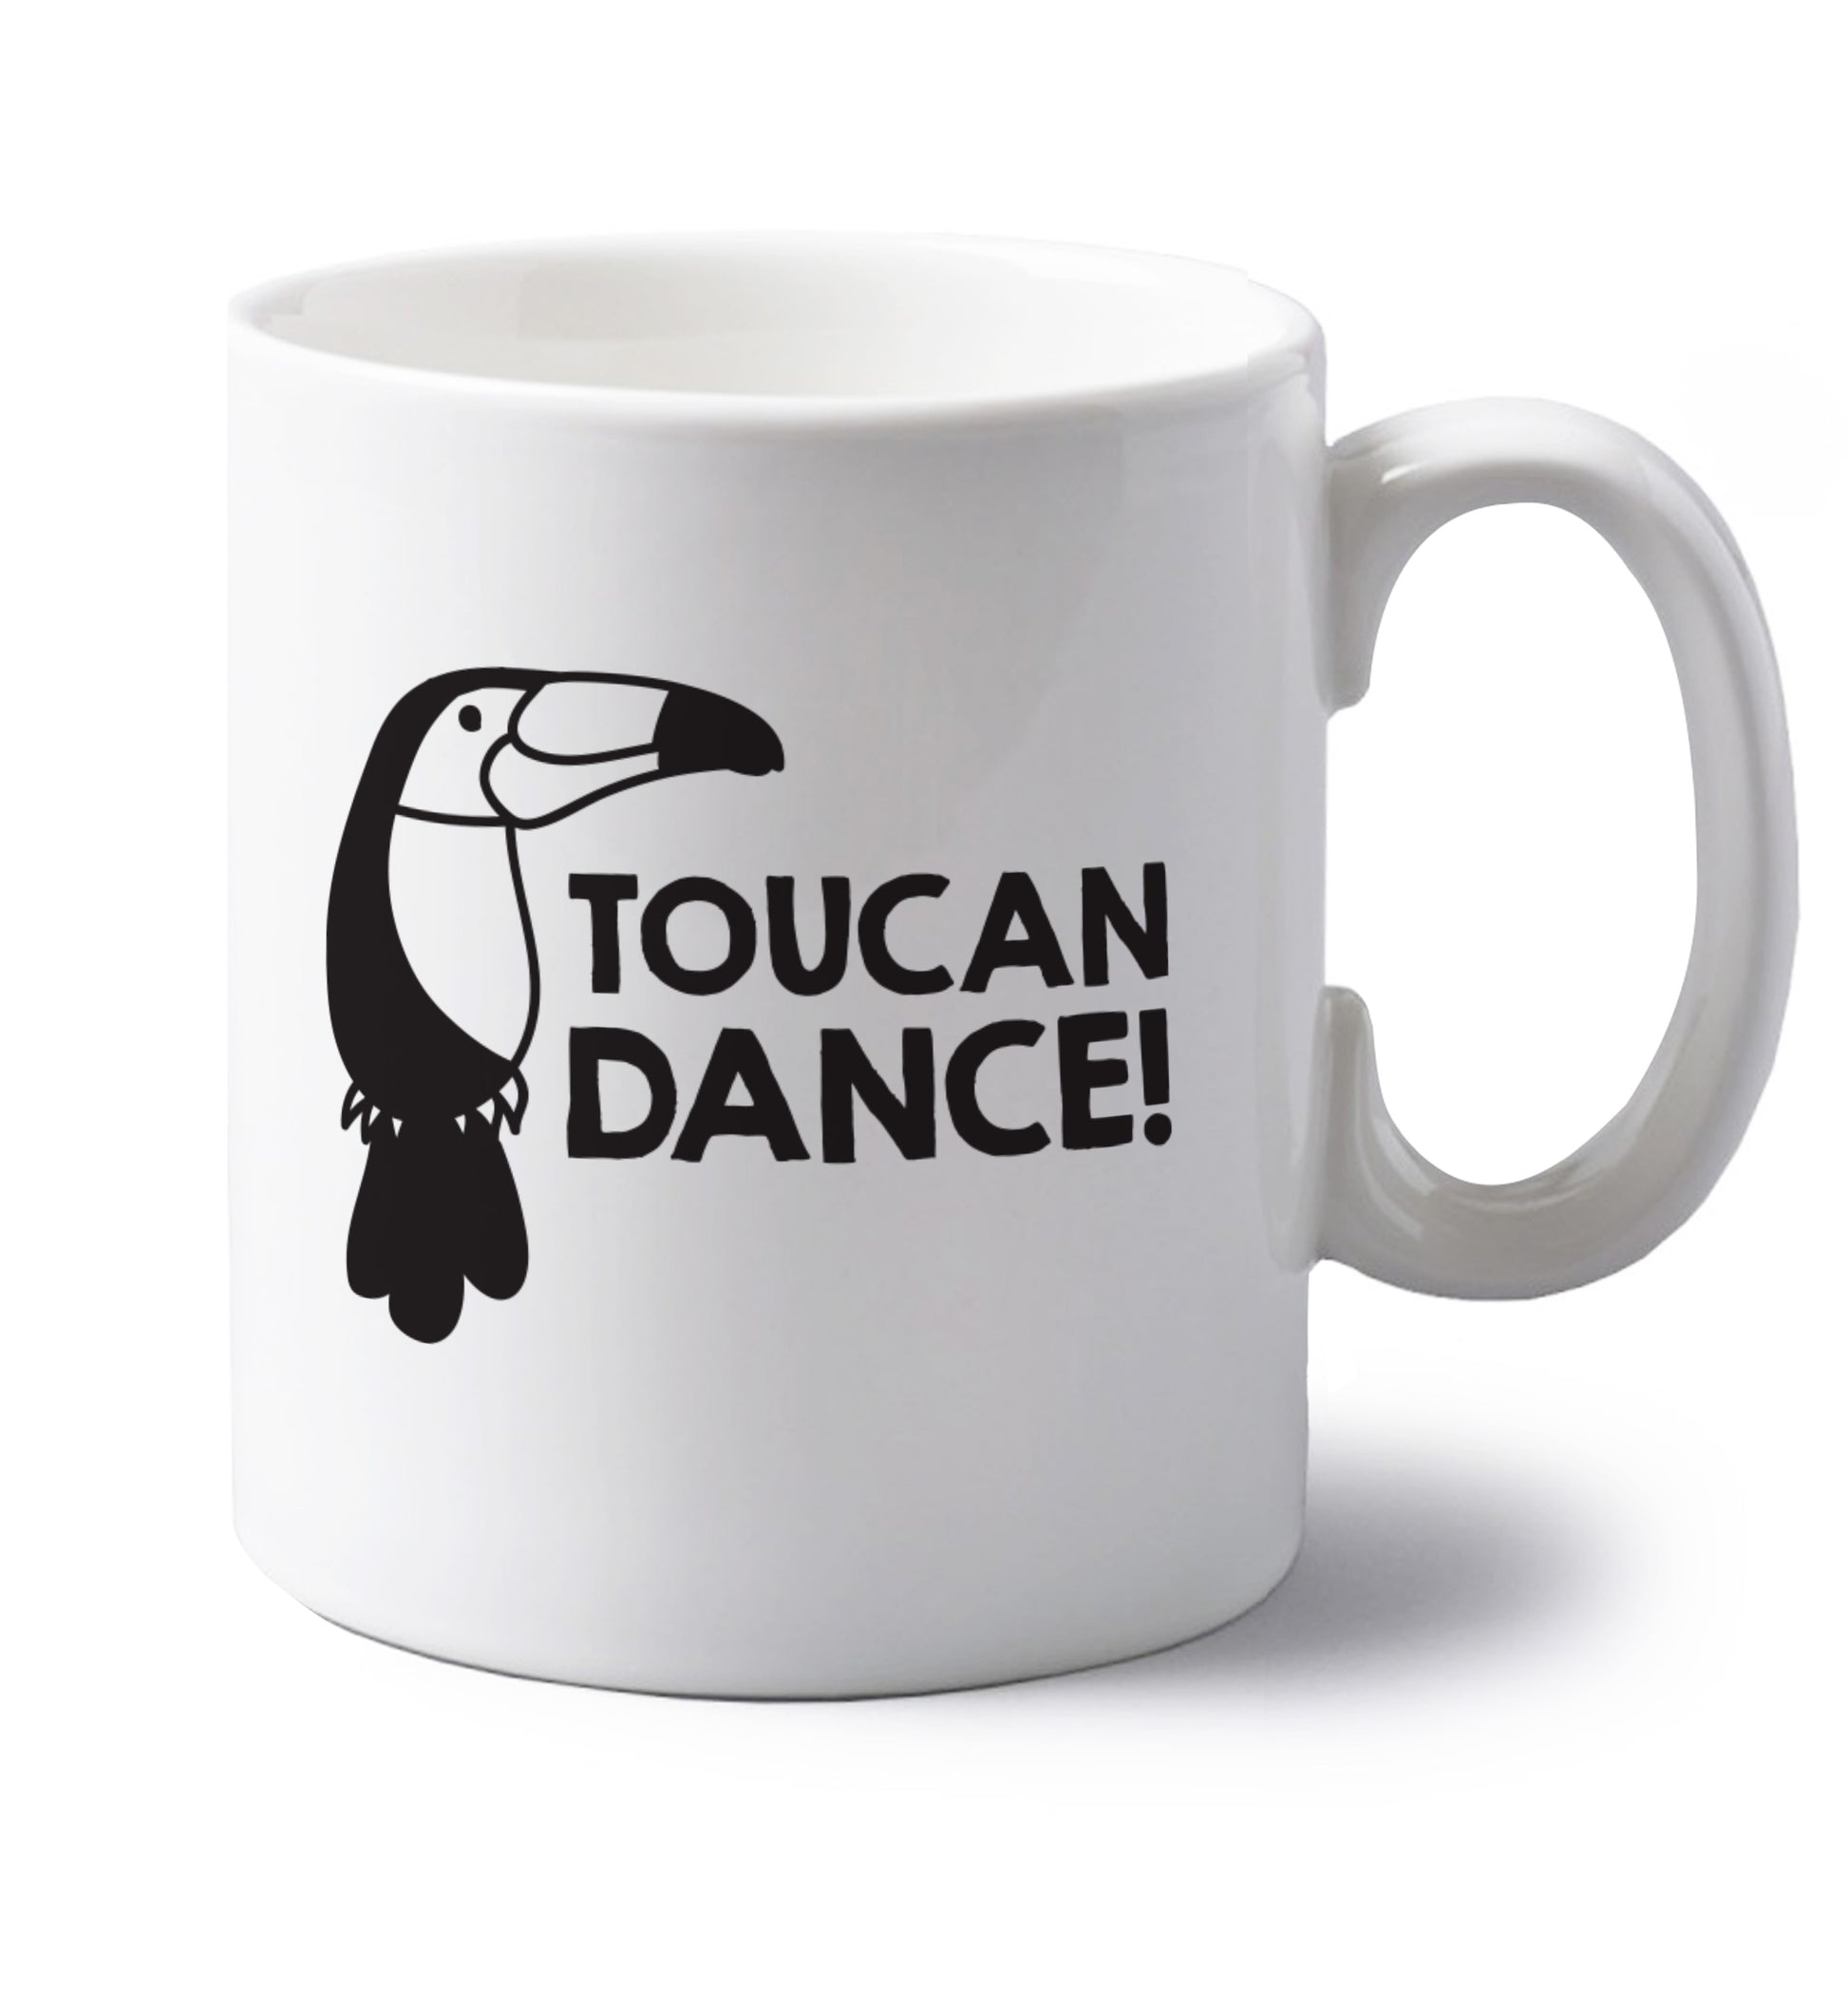 Toucan dance left handed white ceramic mug 